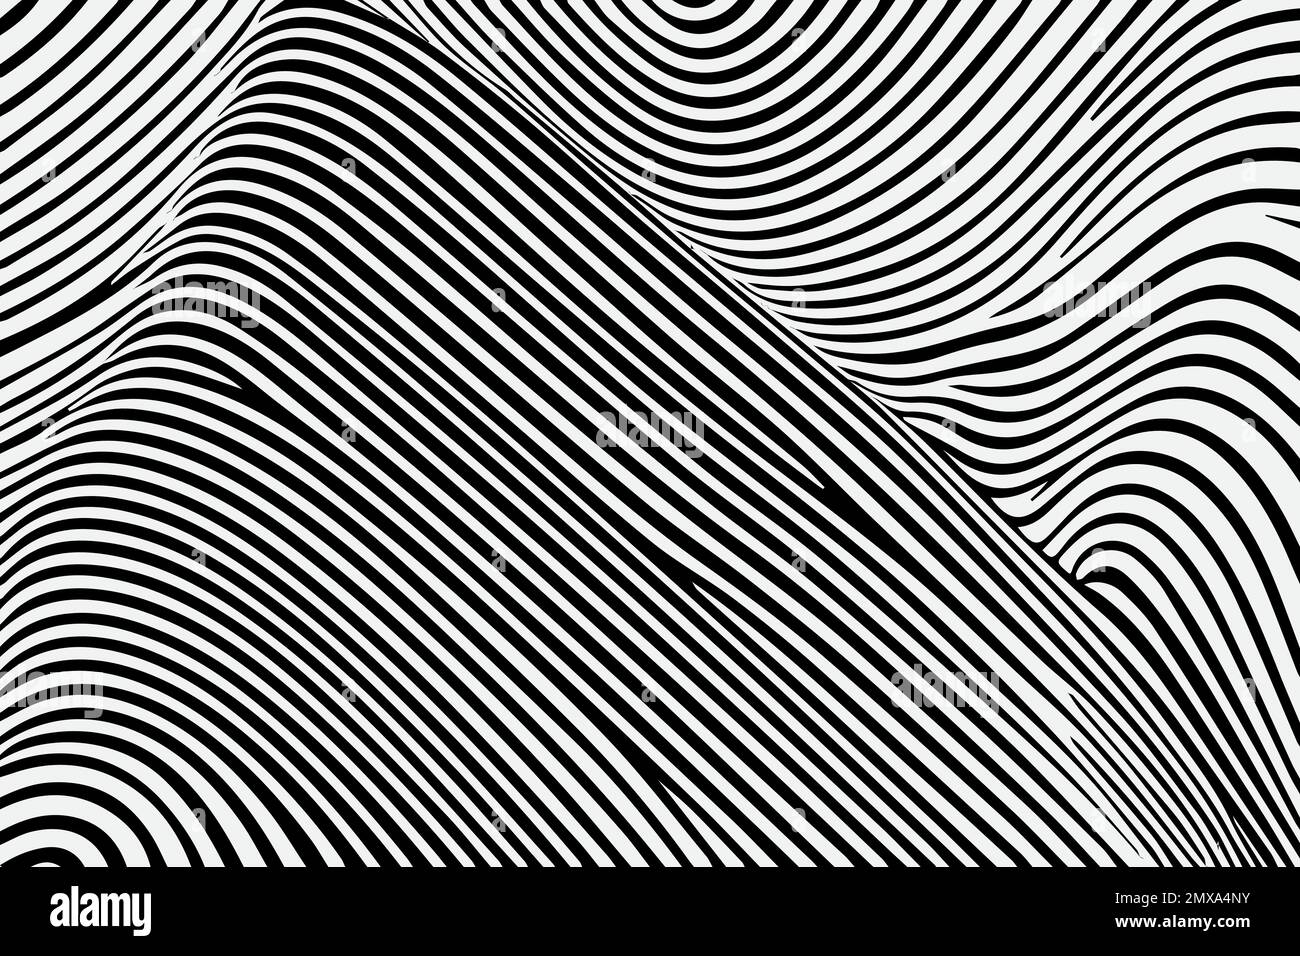 Motif transparent avec lignes ondulées dessinées à la main, format vectoriel EPS modifiable Illustration de Vecteur